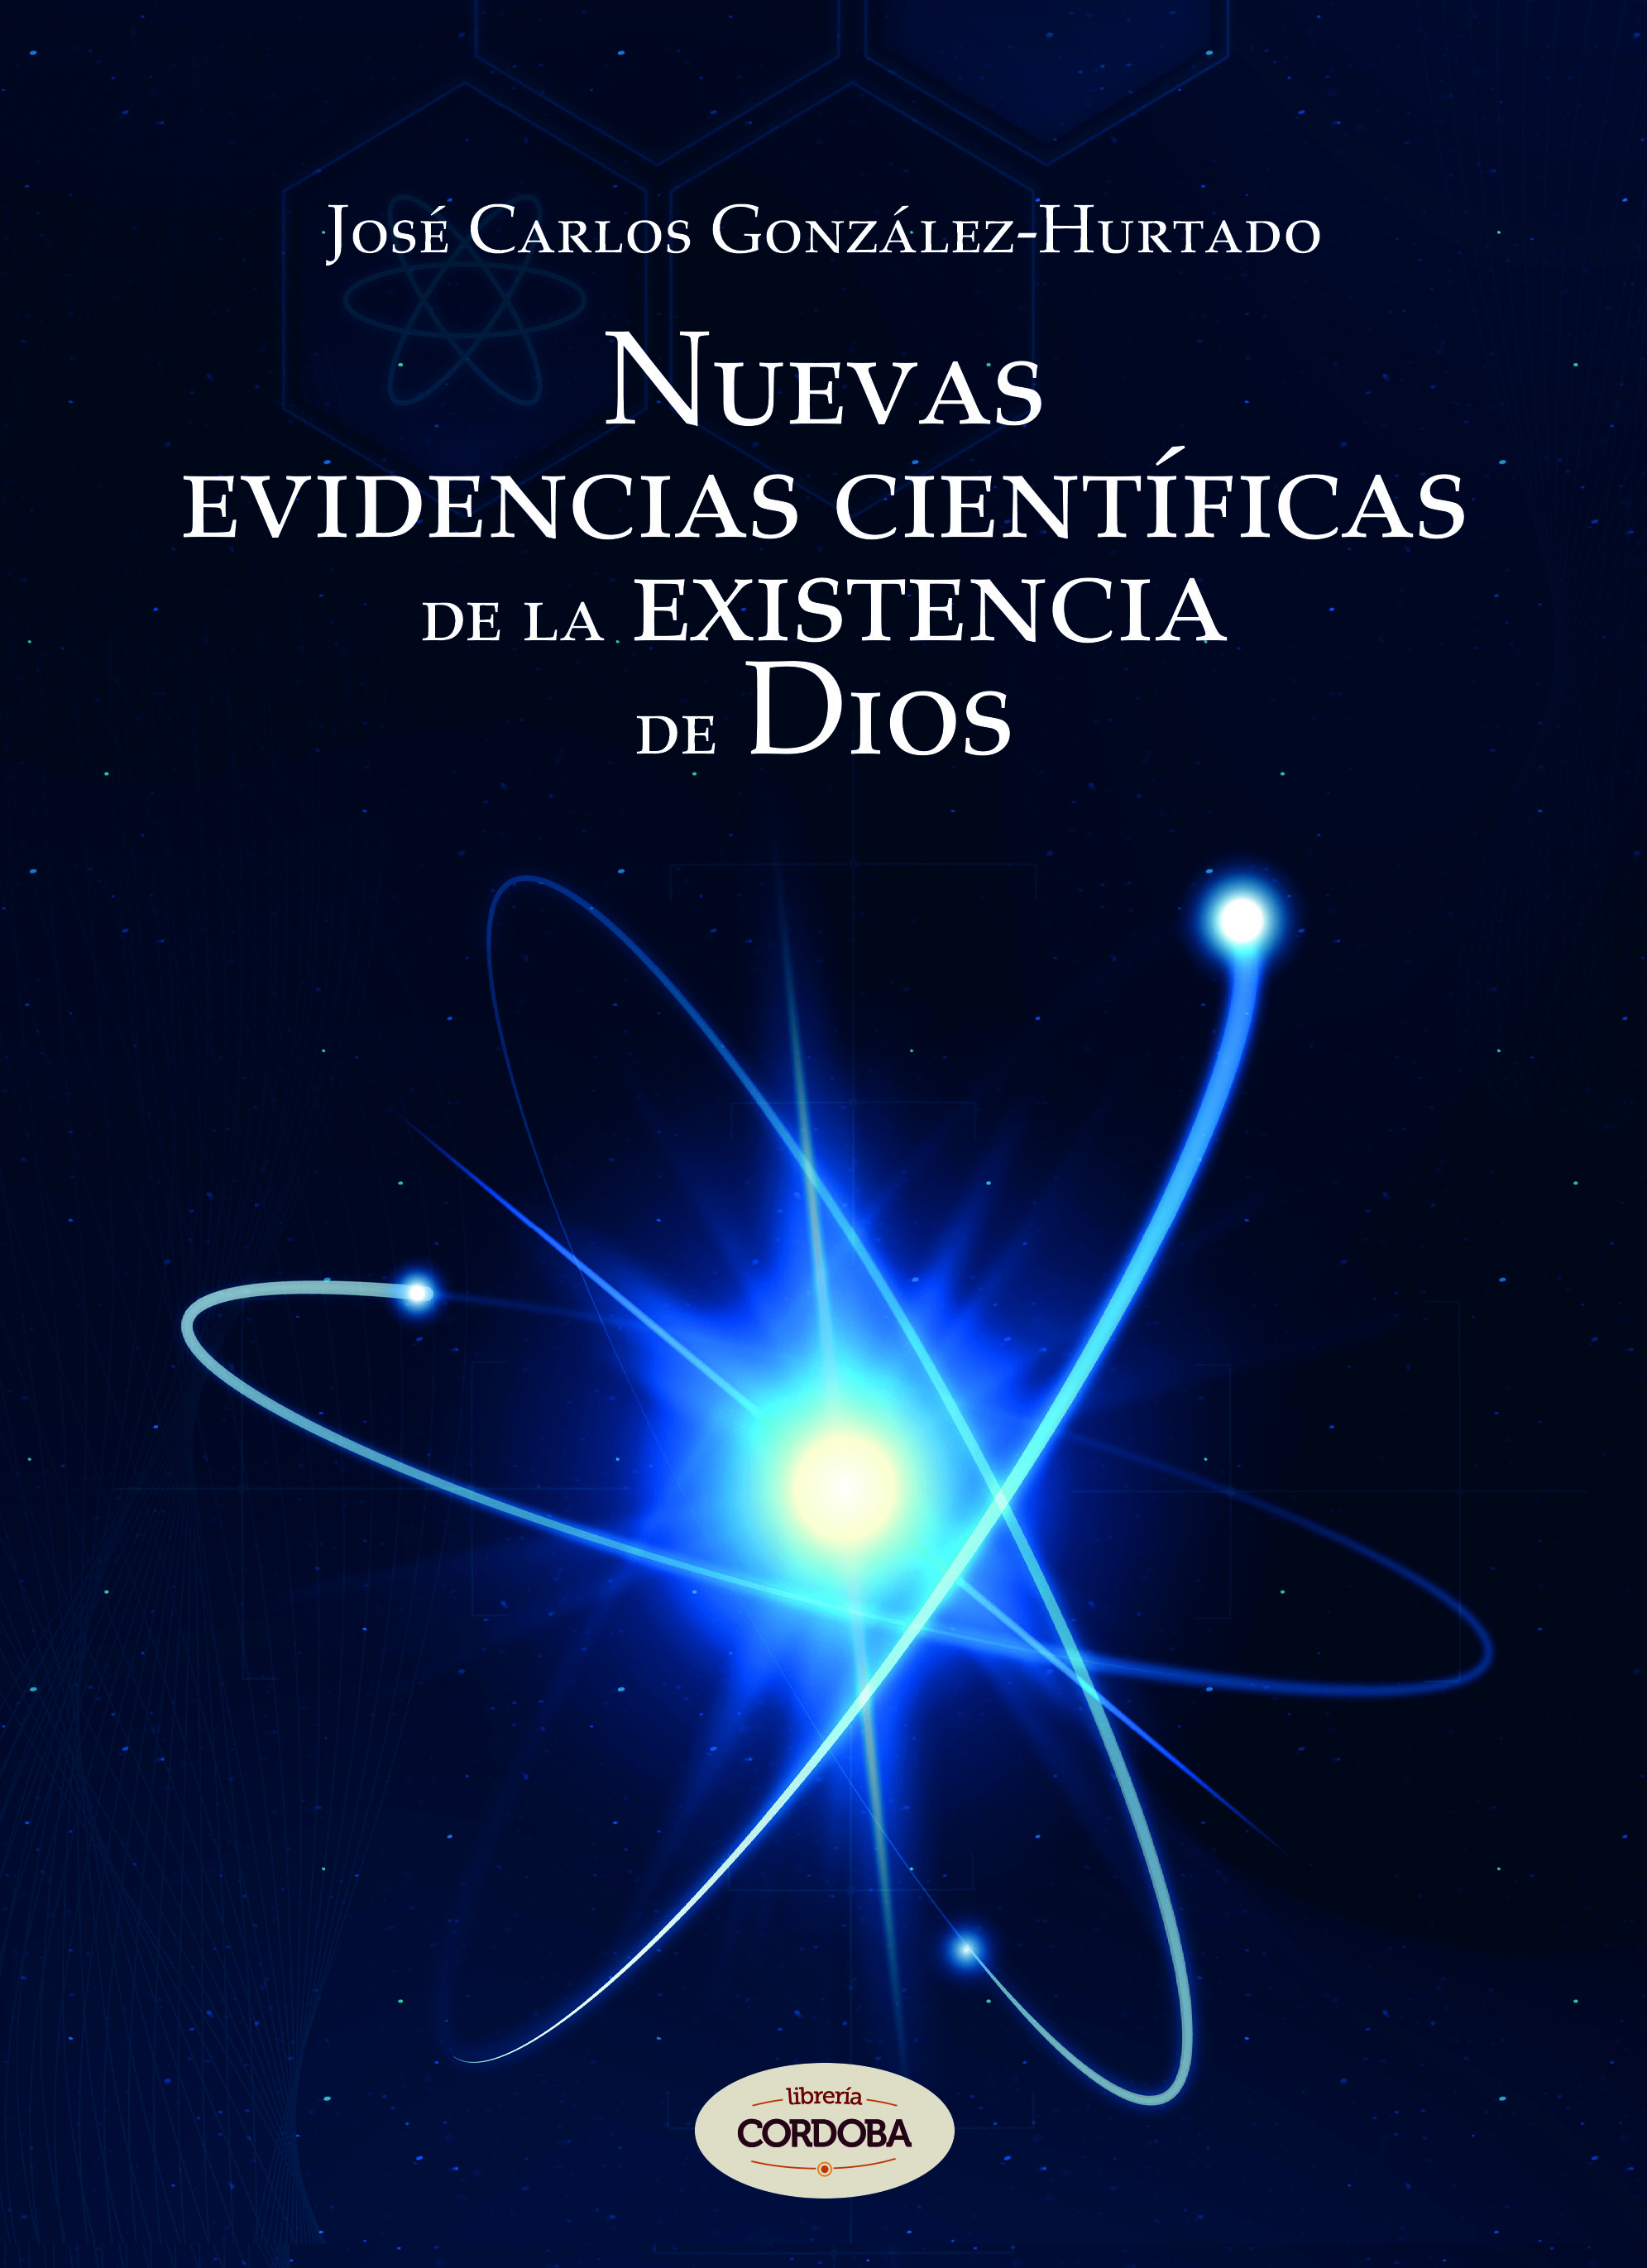 'Nuevas evidencias científicas de la existencia de Dios' 